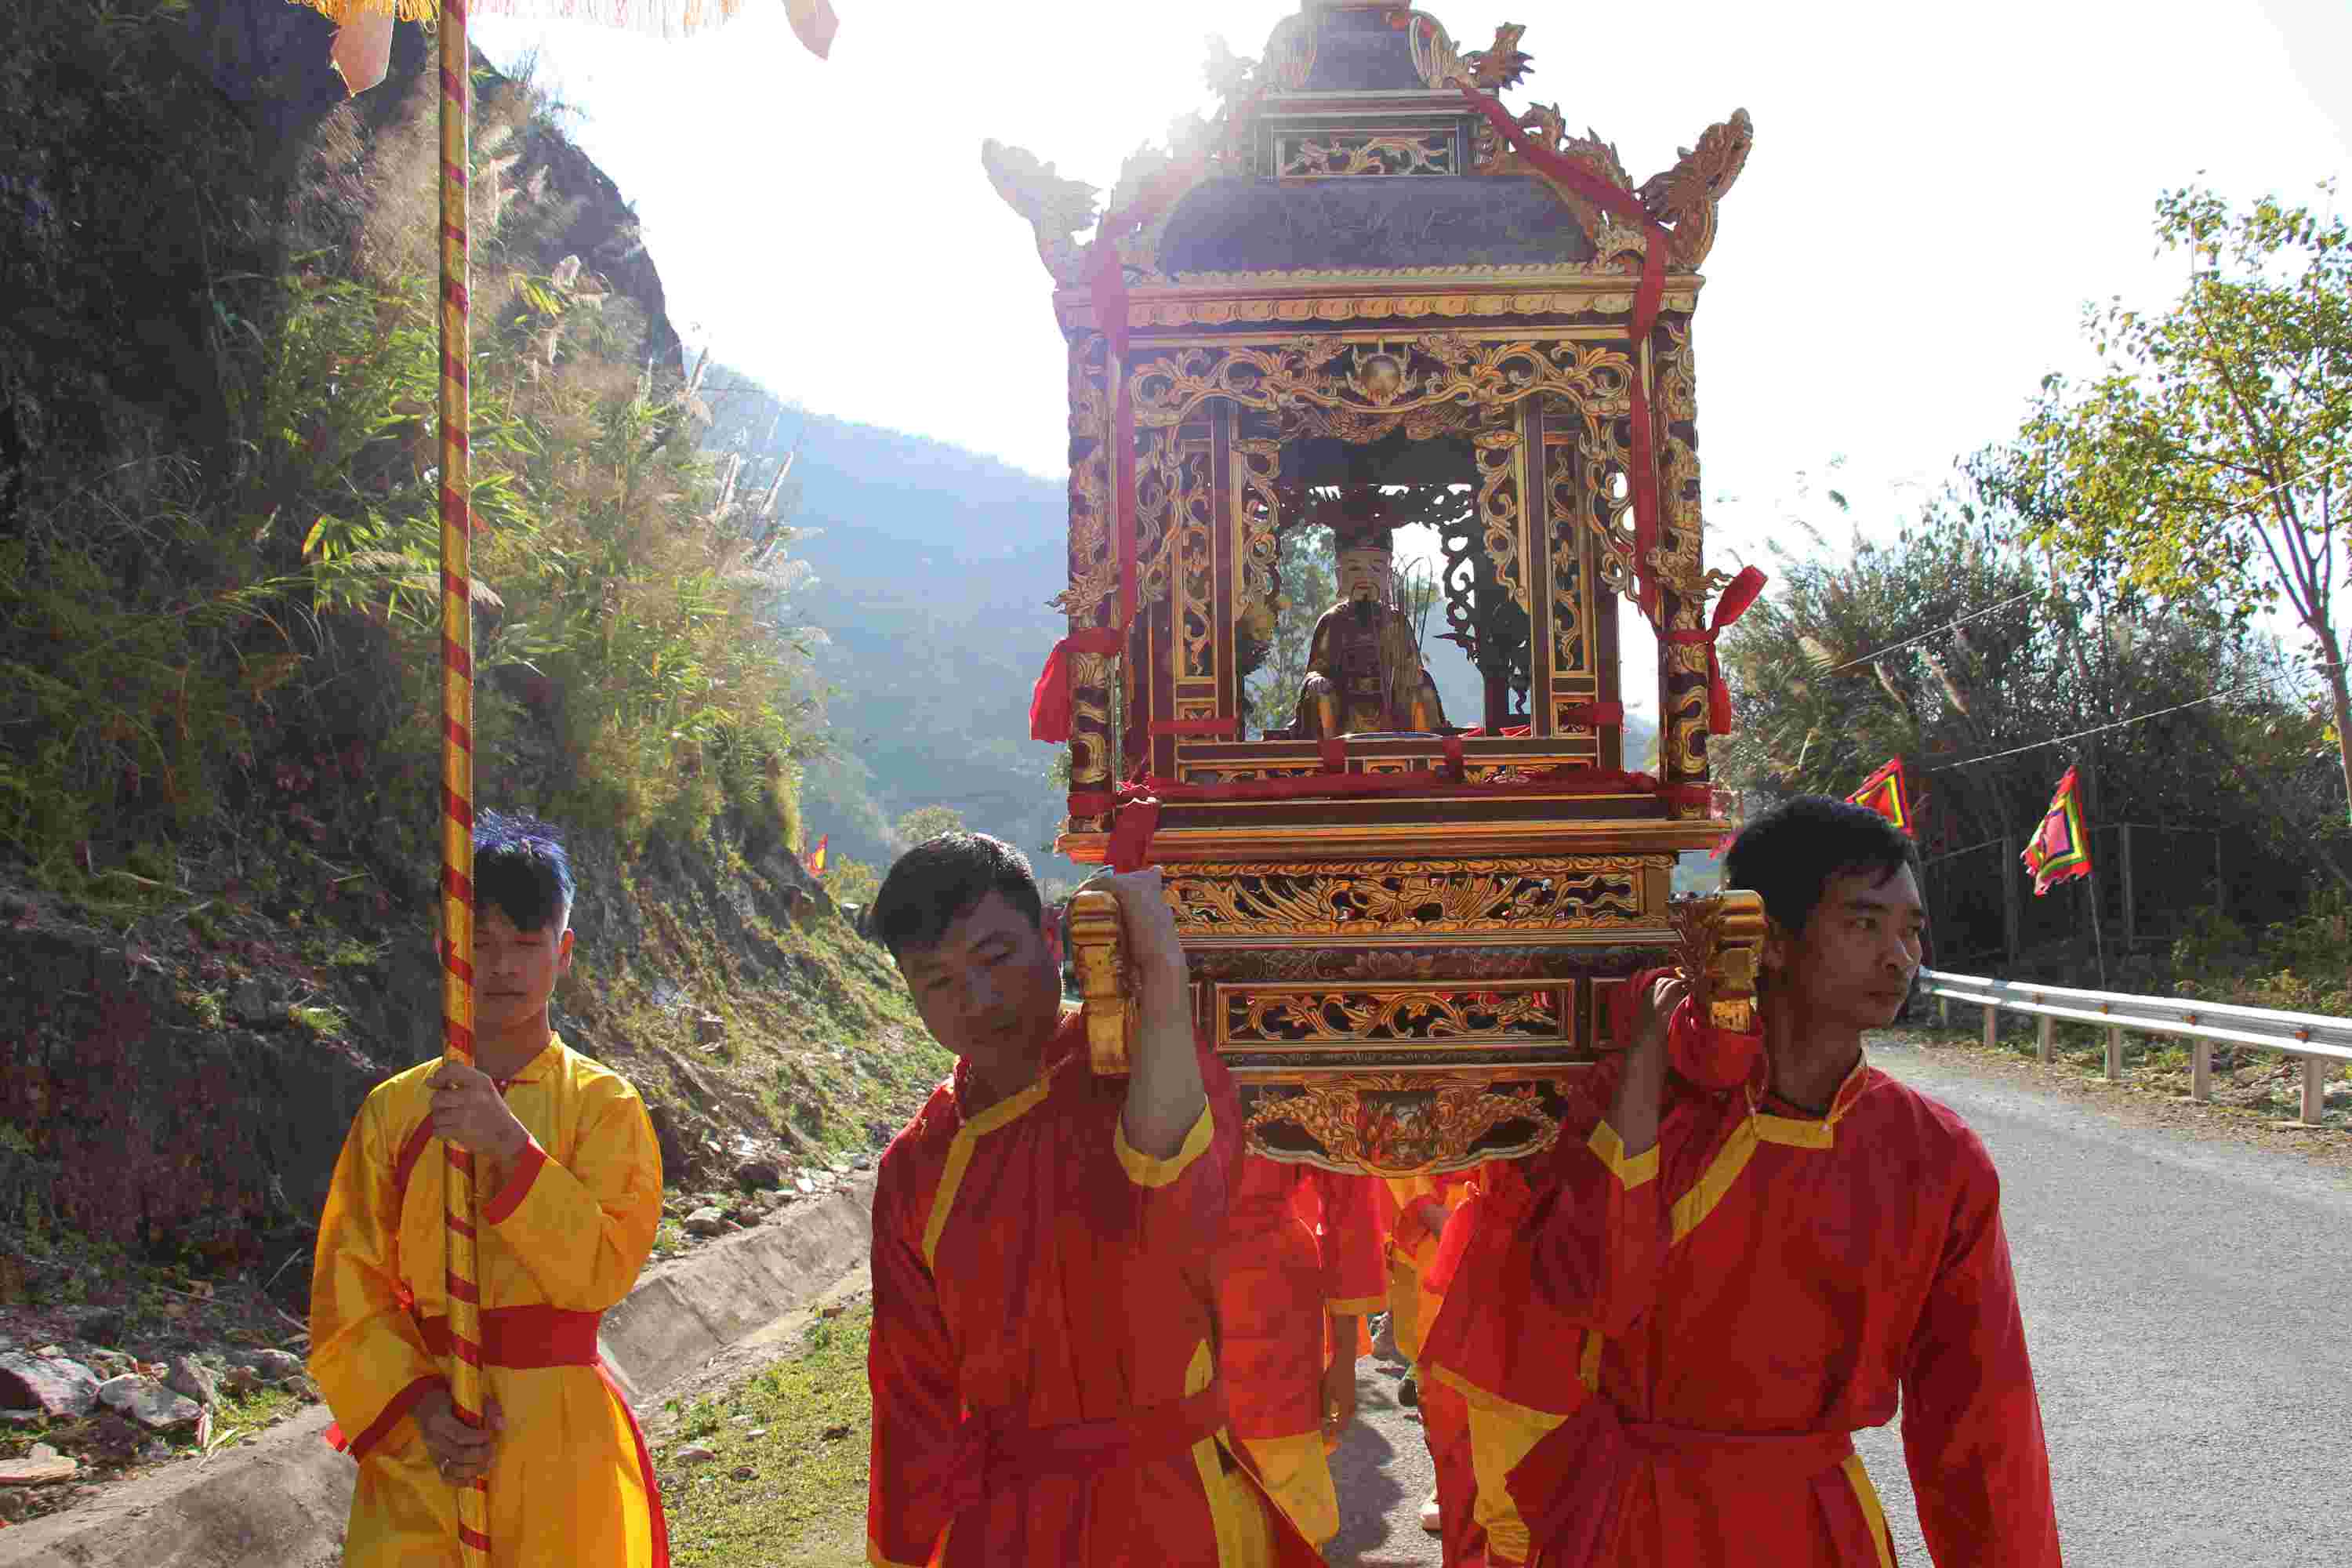 Nghi lễ rước tượng Vua Lê Lợi được tổ chức vào dịp đầu xuân hàng năm đã thu hút nhiều du khách tham gia.